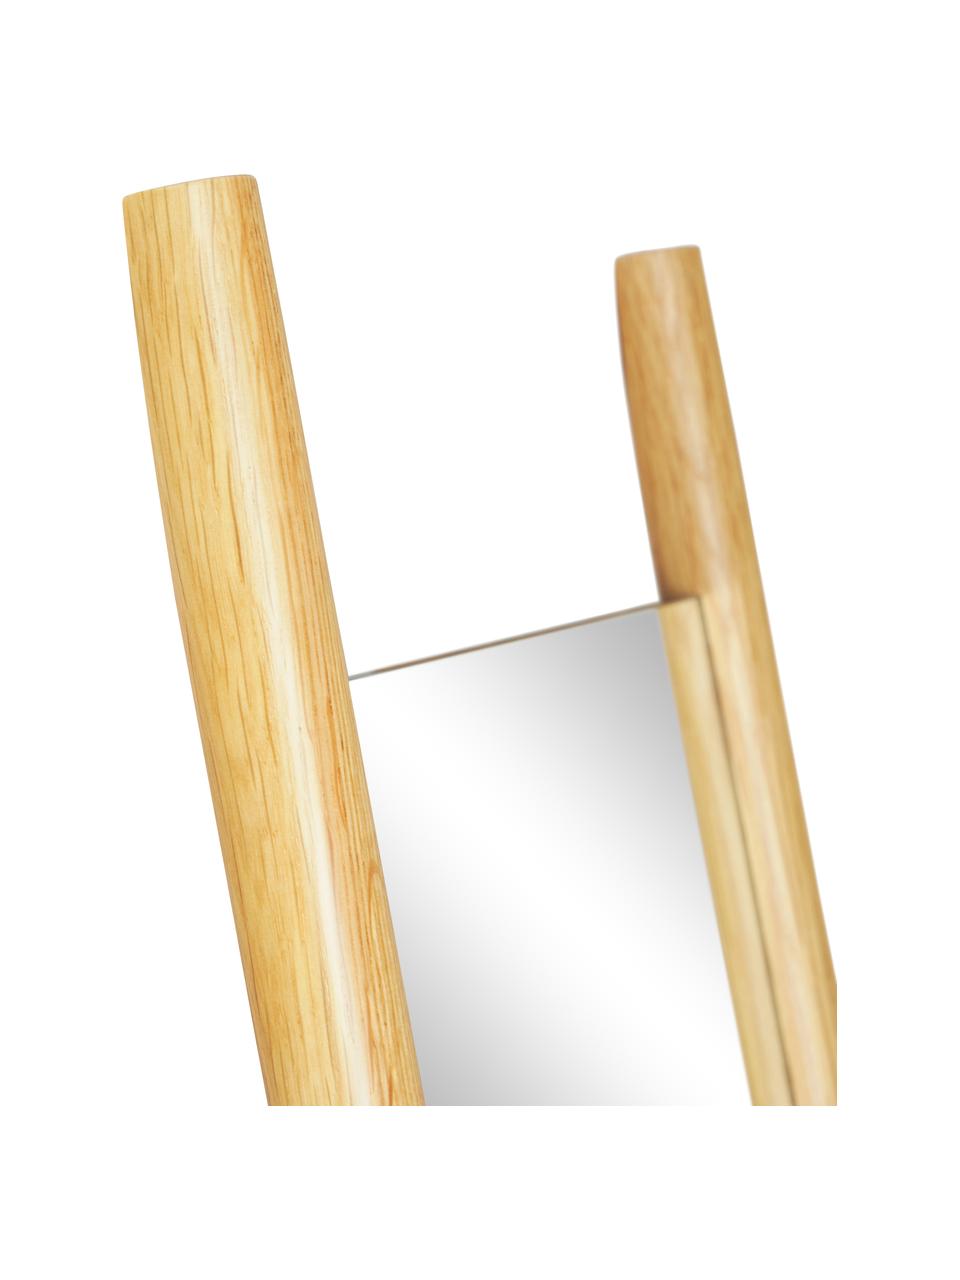 Obdélníkové naklápěcí zrcadlo se vzpěrami z dubového dřeva Elin, Dubové dřevo, Š 45 cm, V 170 cm